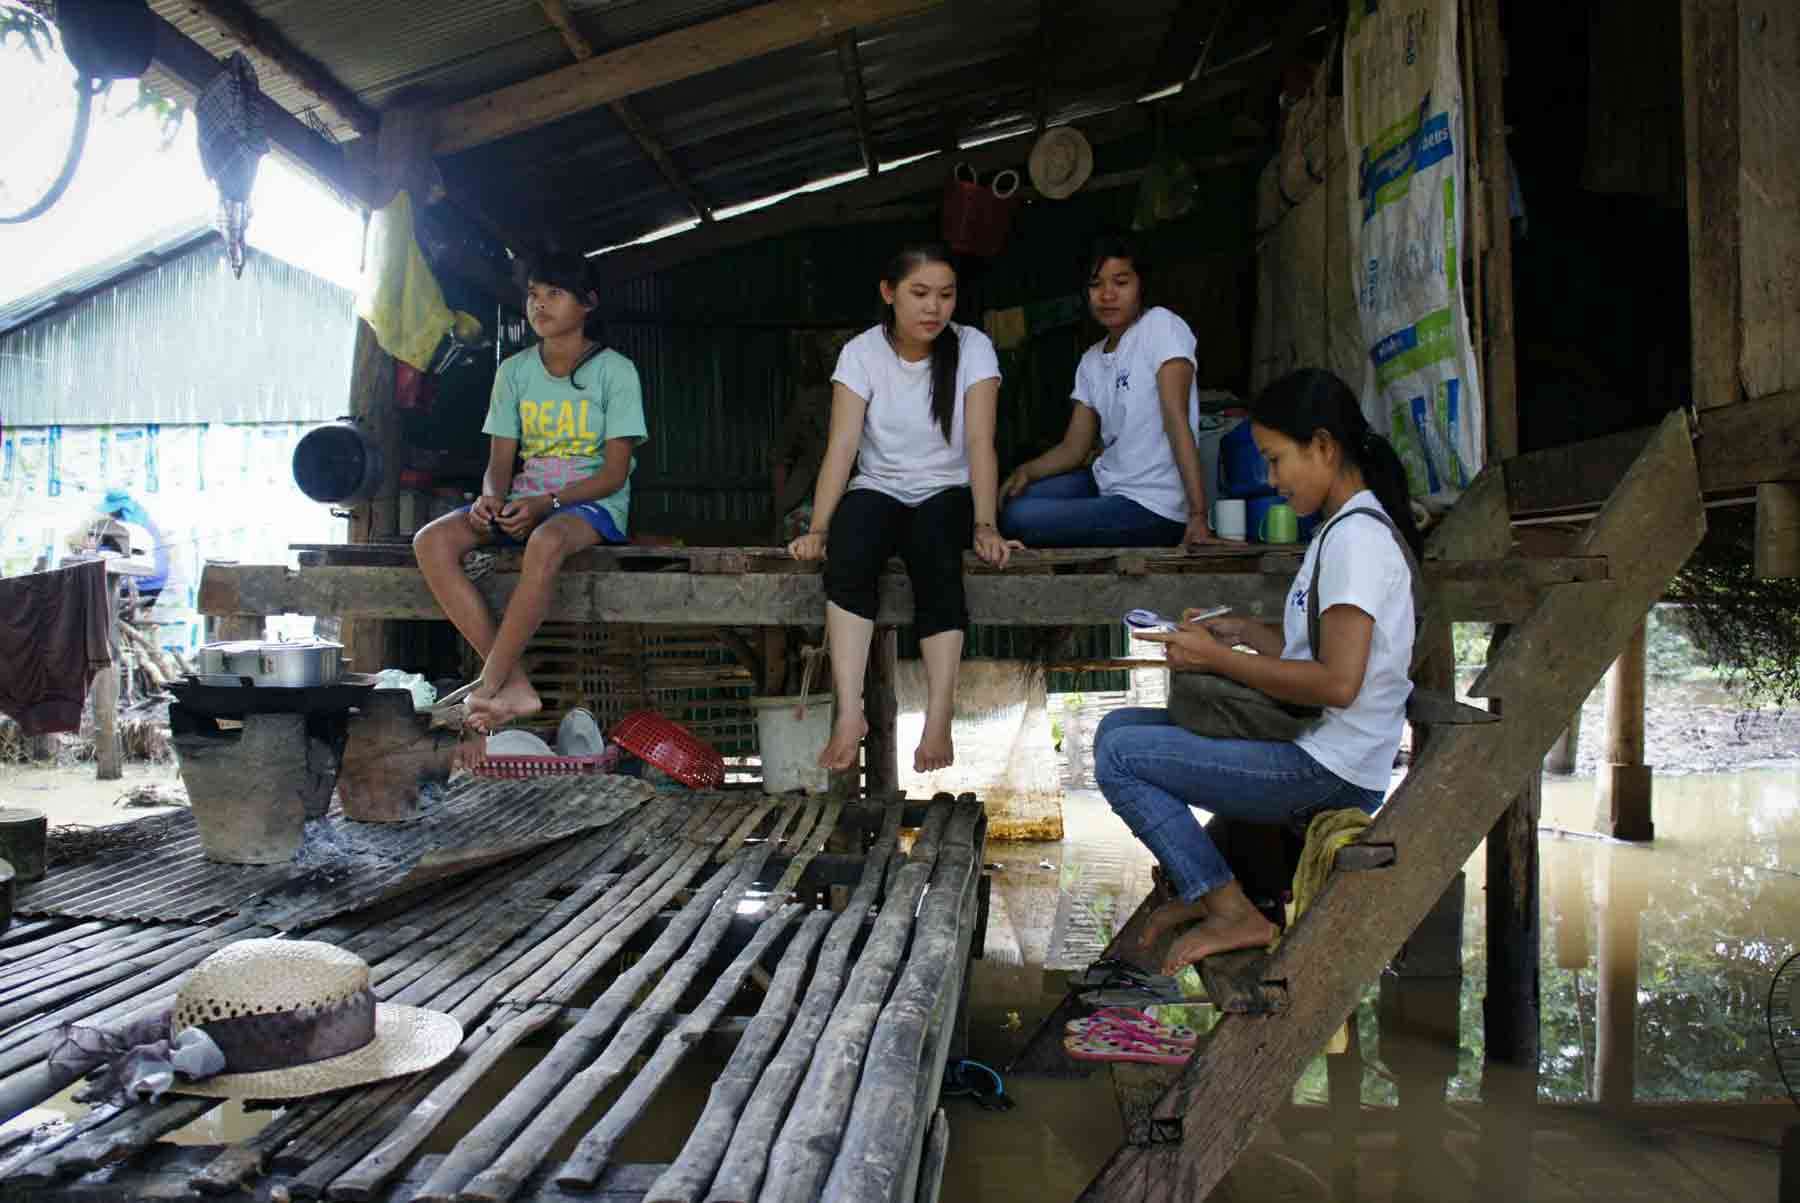 Unsere Freiwilligen intervenieren in einem Dorf in Kambodscha, um einem Kind zu helfen, das sich in einer Situation schweren Missbrauchs befindet.